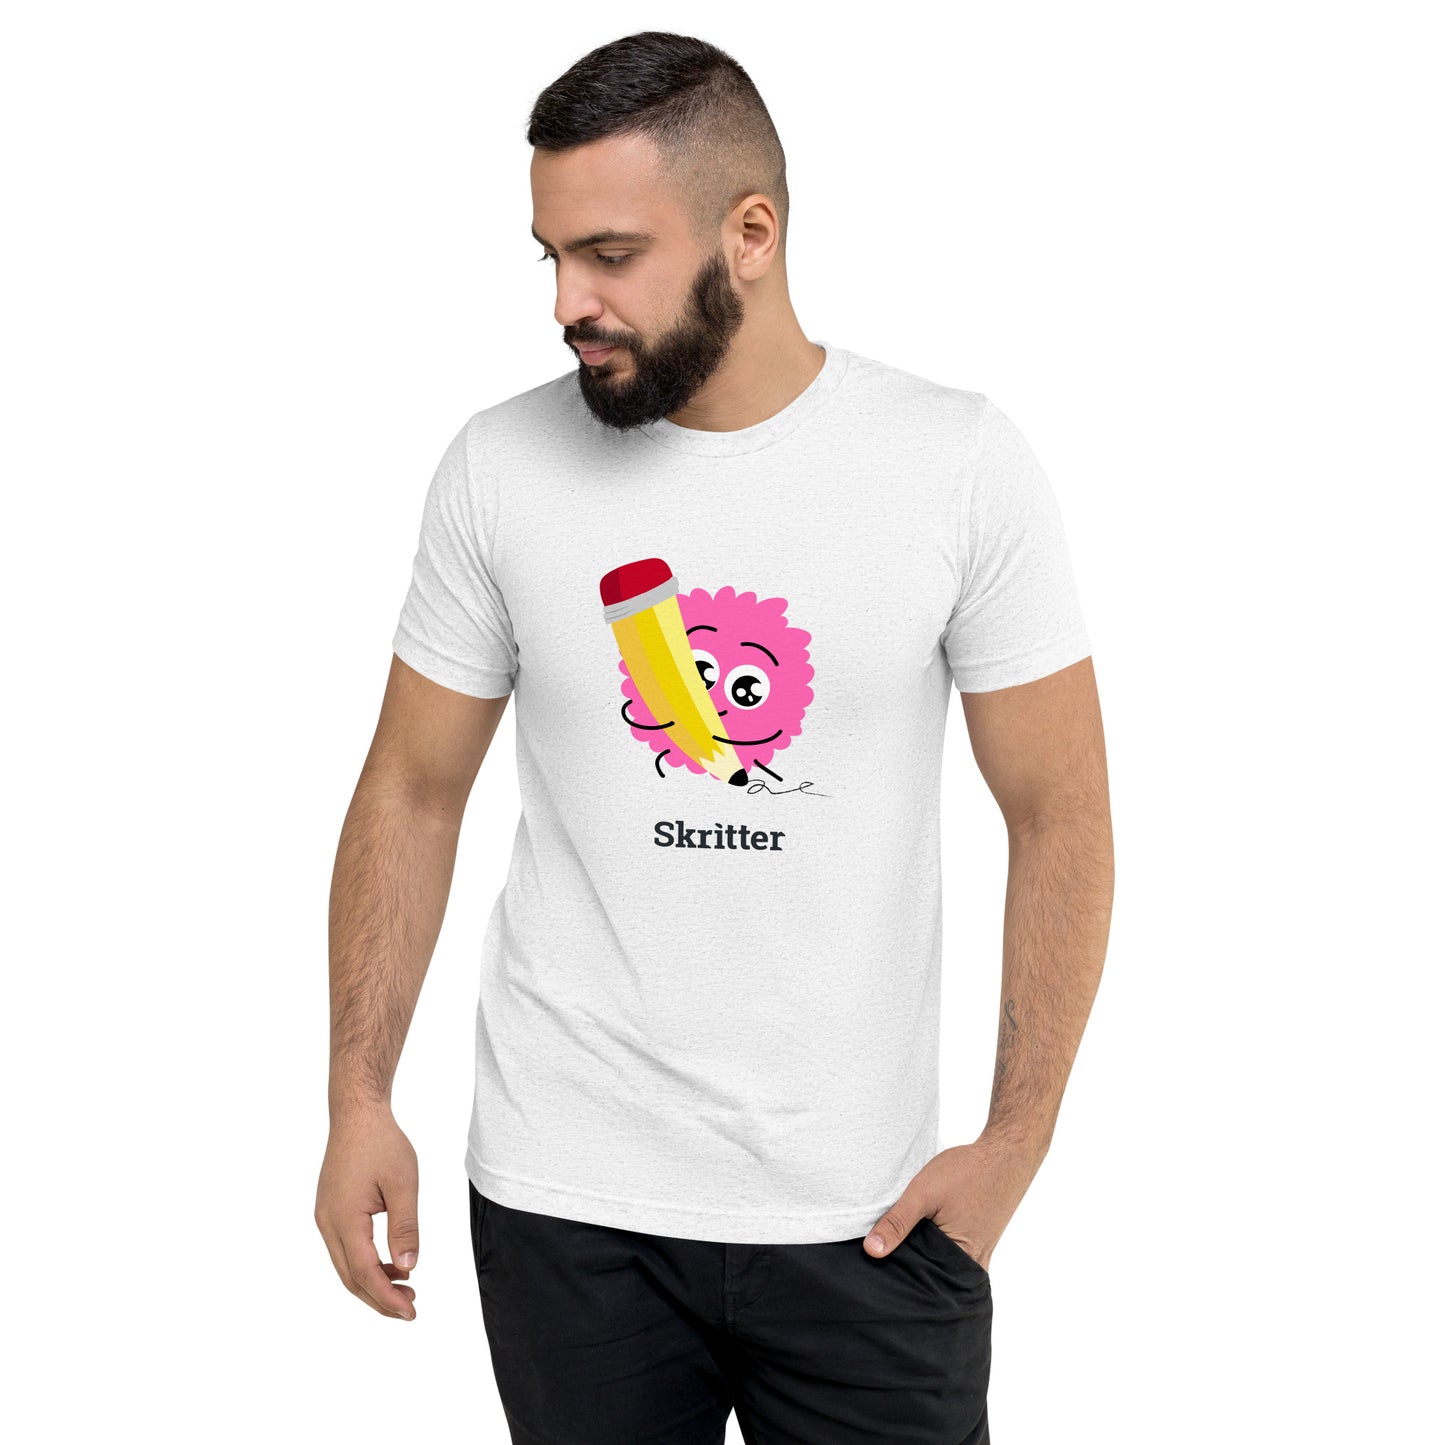 Short sleeve uni-sex writing critter t-shirt